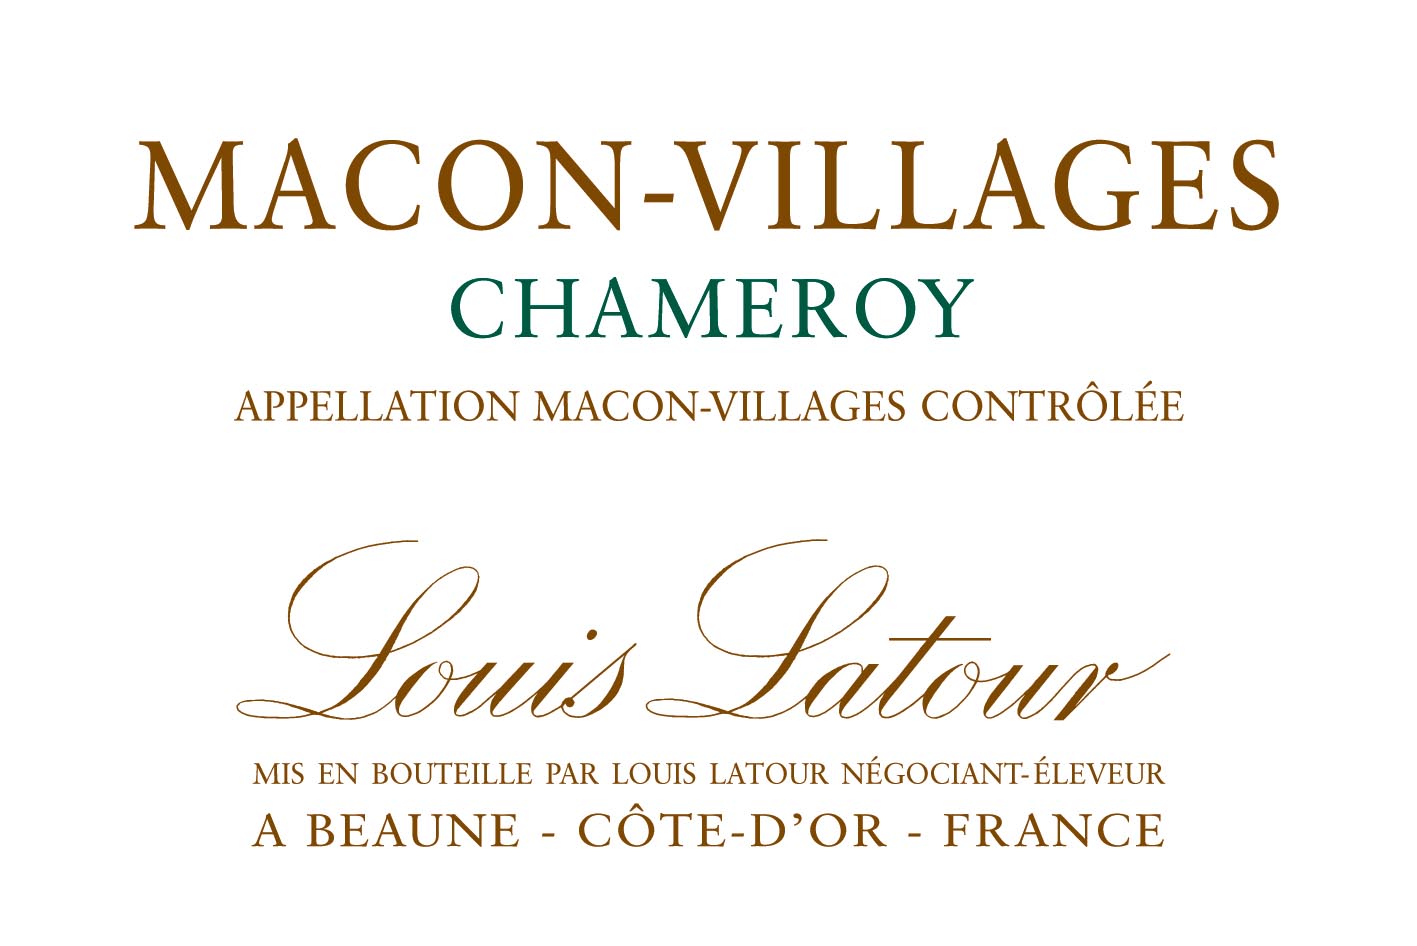 Louis Latour - Macon-Villages - Chameroy label